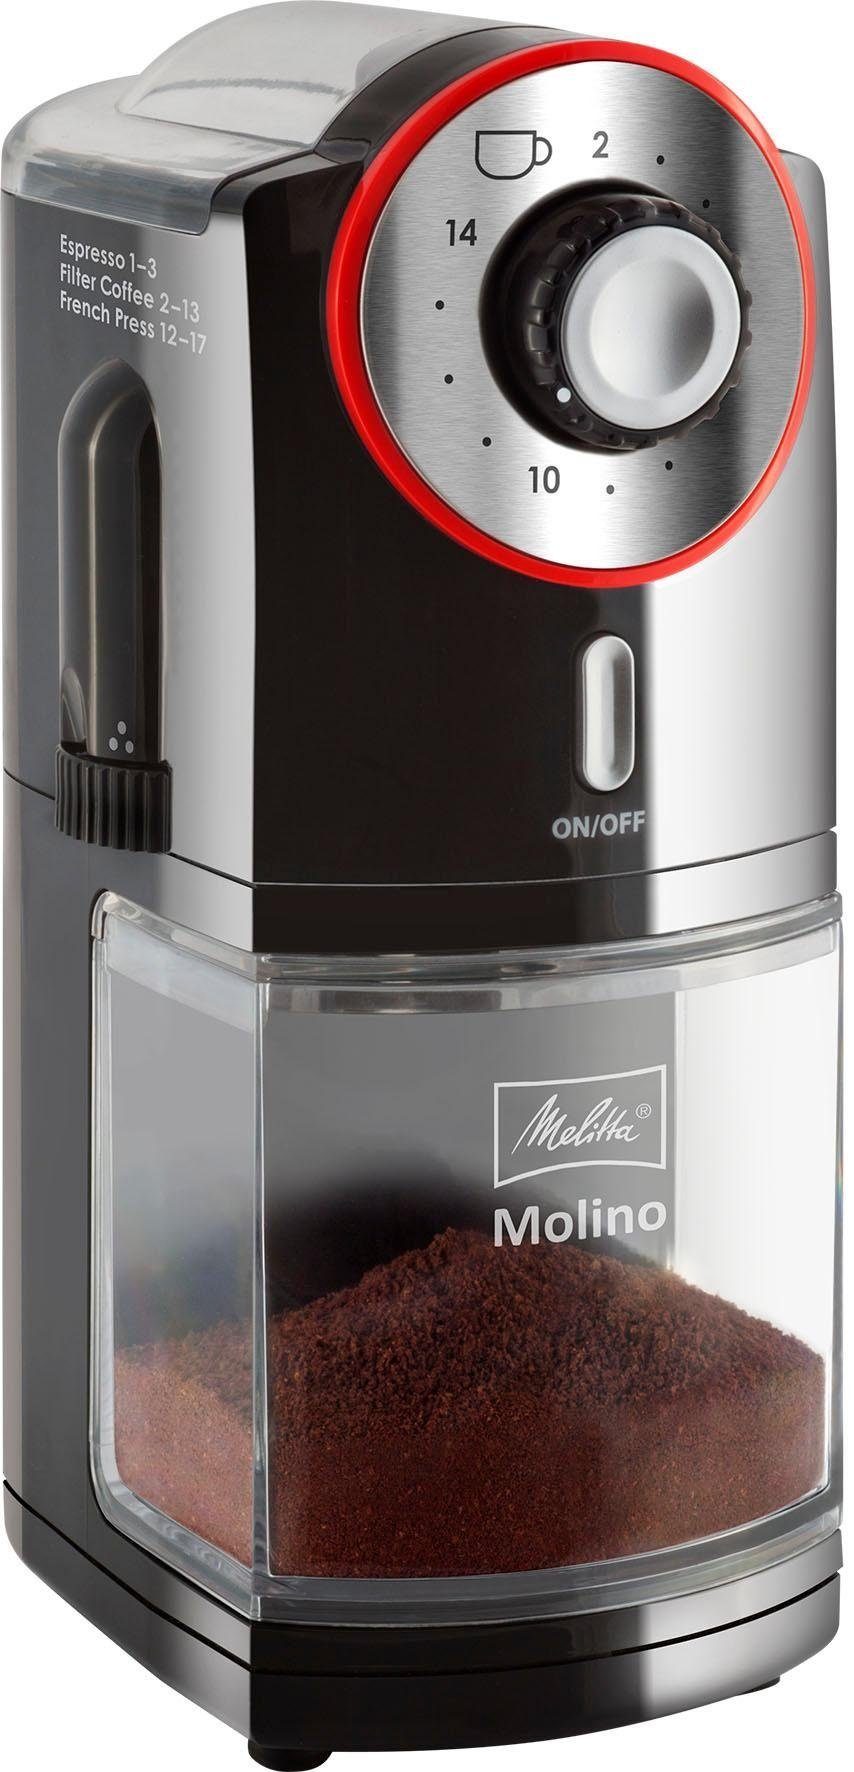 W, Bohnenbehälter 100 g 200 Melitta Kaffeemühle 1019-01, Molino® Scheibenmahlwerk,